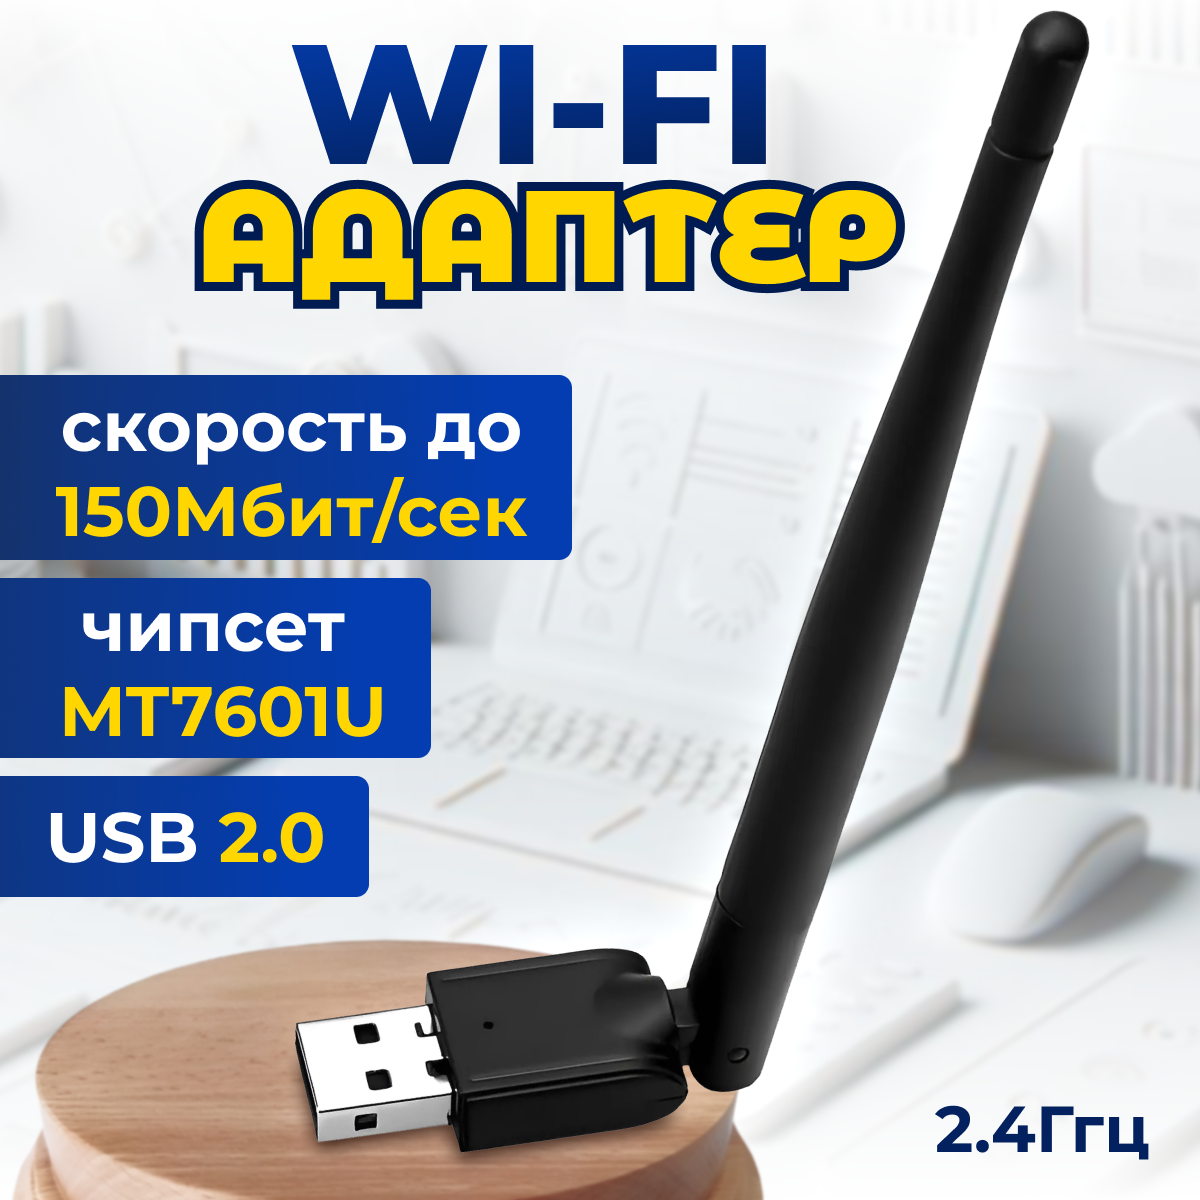 Адаптер Wi-Fi Rezer W3 802.11n USB2.0 до 150Mbit чипсет MT7601U